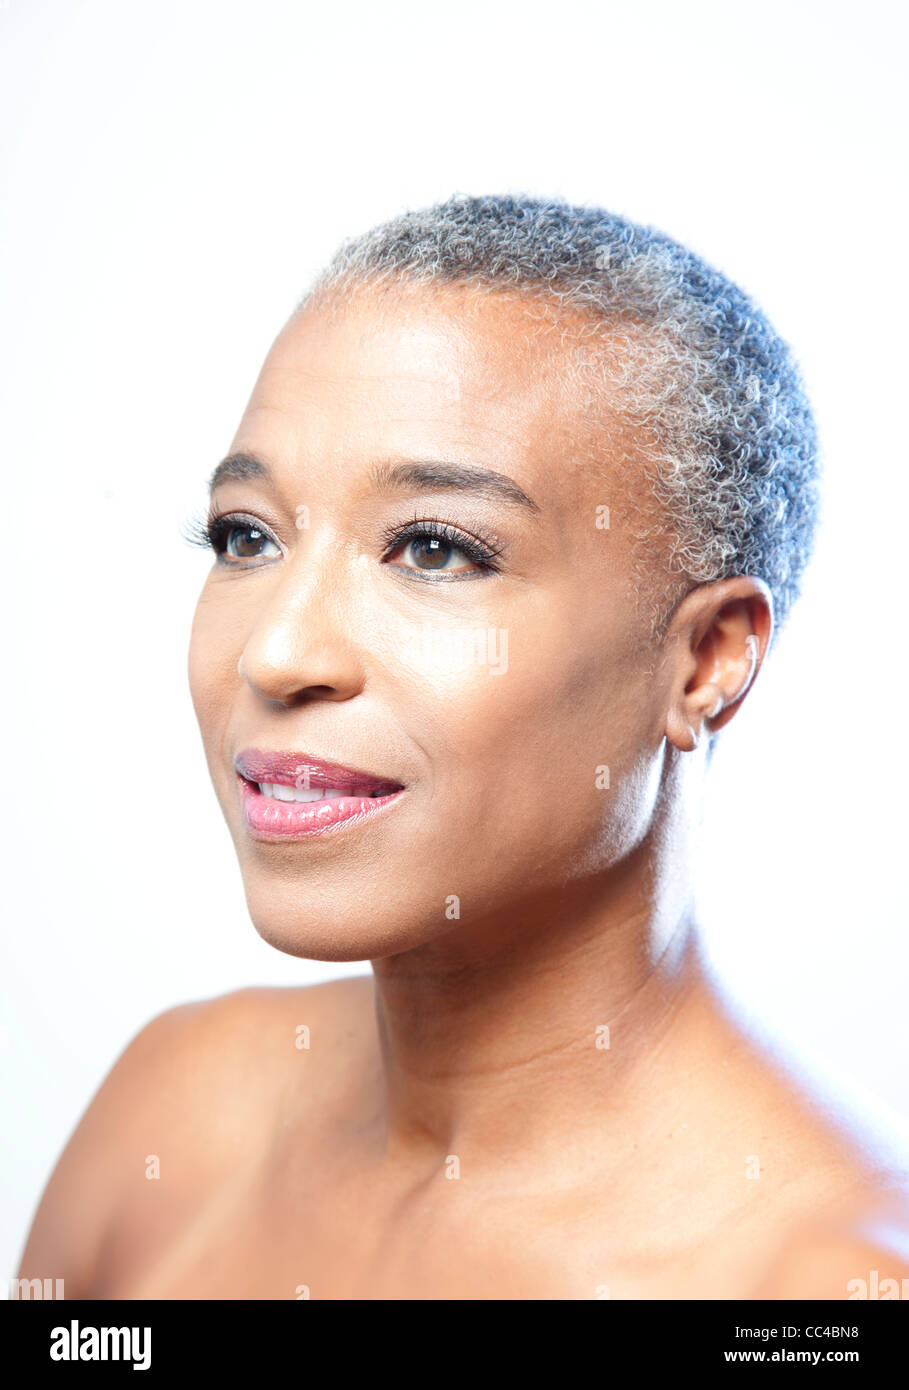 Bellezza semplice immagine o il ritratto di un americano africano donna di mezza età con corti capelli grigi Foto Stock